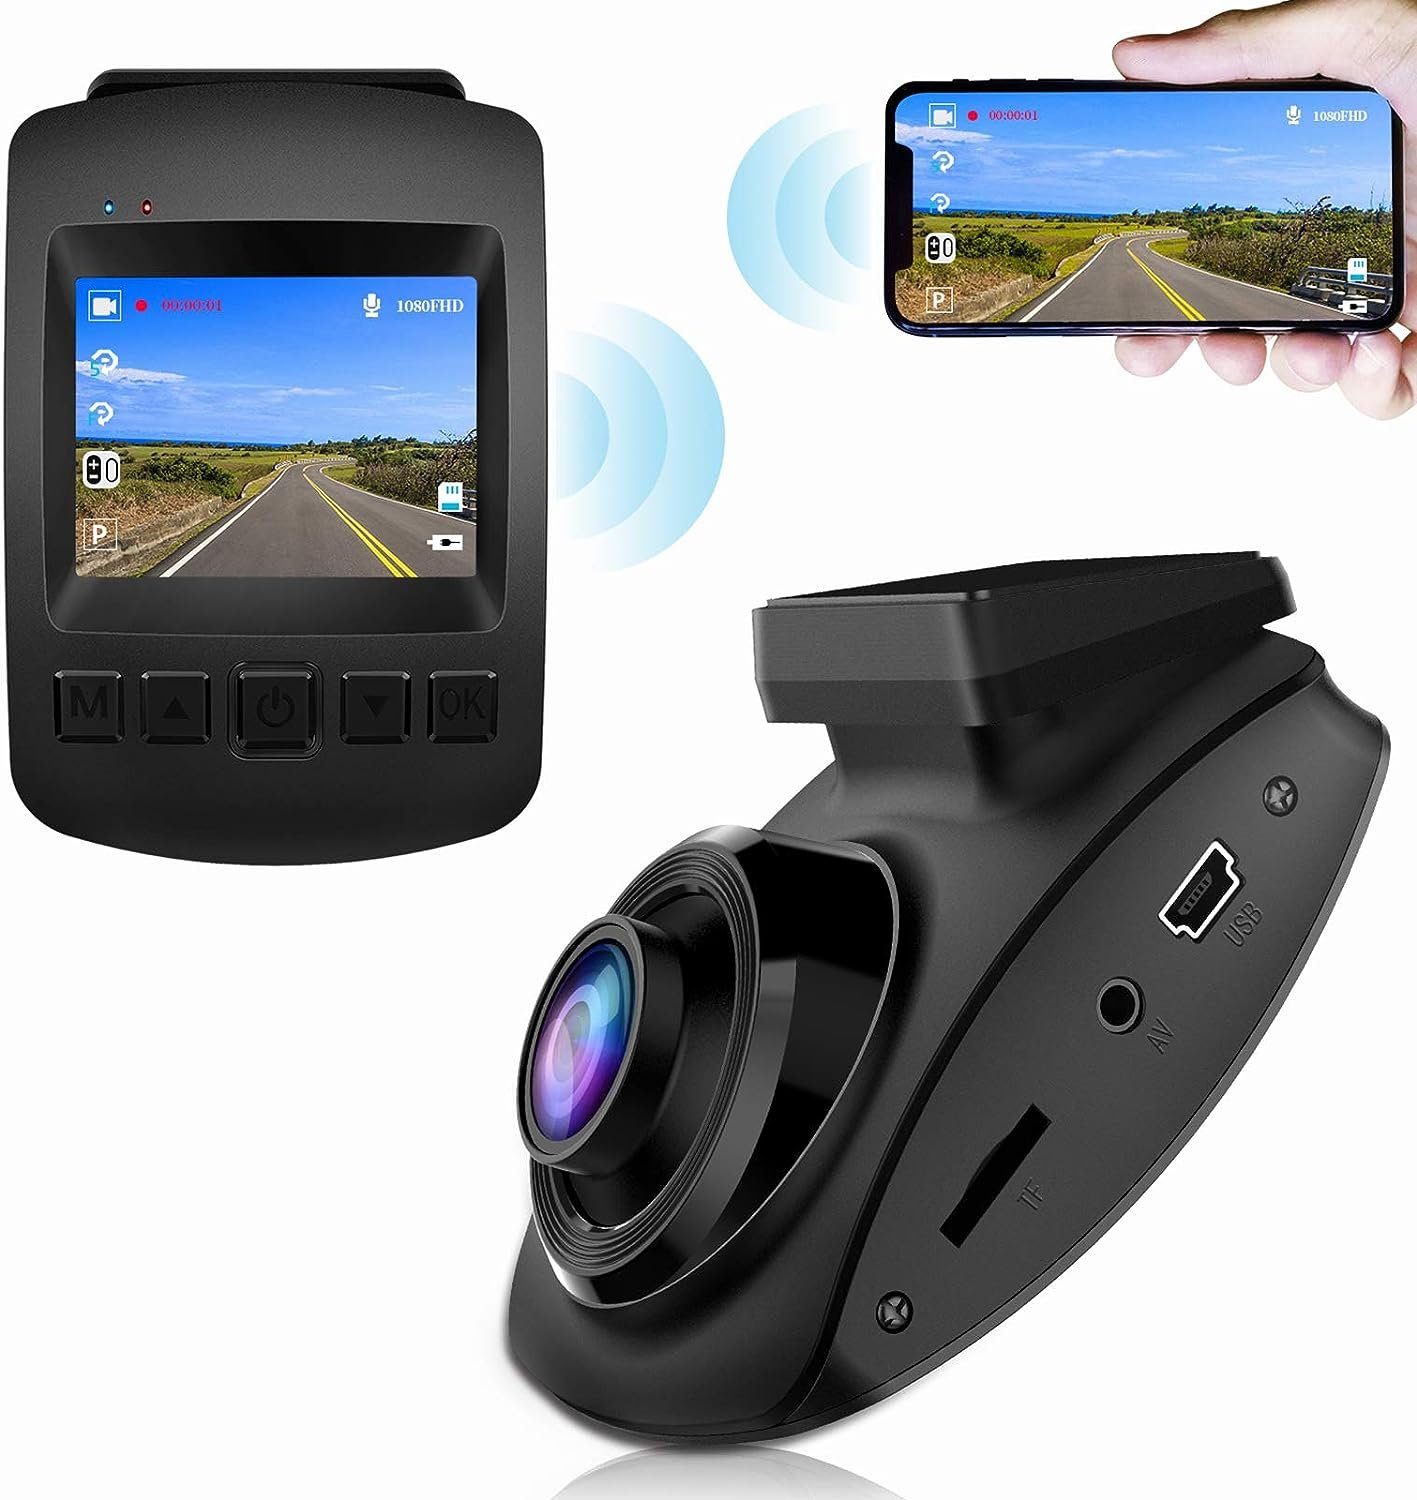 Mutoy Autokamera Dashcam WiFi Full HD 1080P,2 Zoll  Bildschirm,170°Weitwinkel Dashcam (Full HD, WLAN (Wi-Fi), Auto Kamera mit  Notzeichnung, Schleifenaufzeichnung, Parküberwachung/G-Sensor,  Bewegungserkennung)